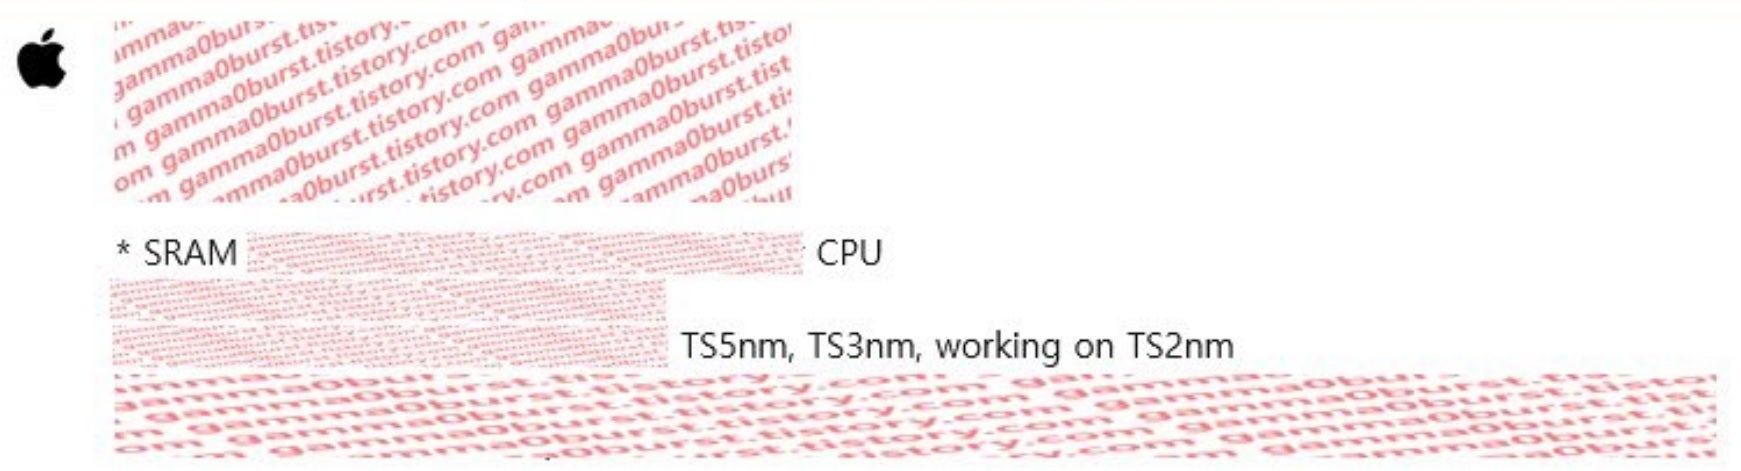 Slides fortemente redigidos mostram que a Apple está projetando chipsets de 2 nm - a Apple começou a projetar chips de 2 nm para futuros modelos de iPhone